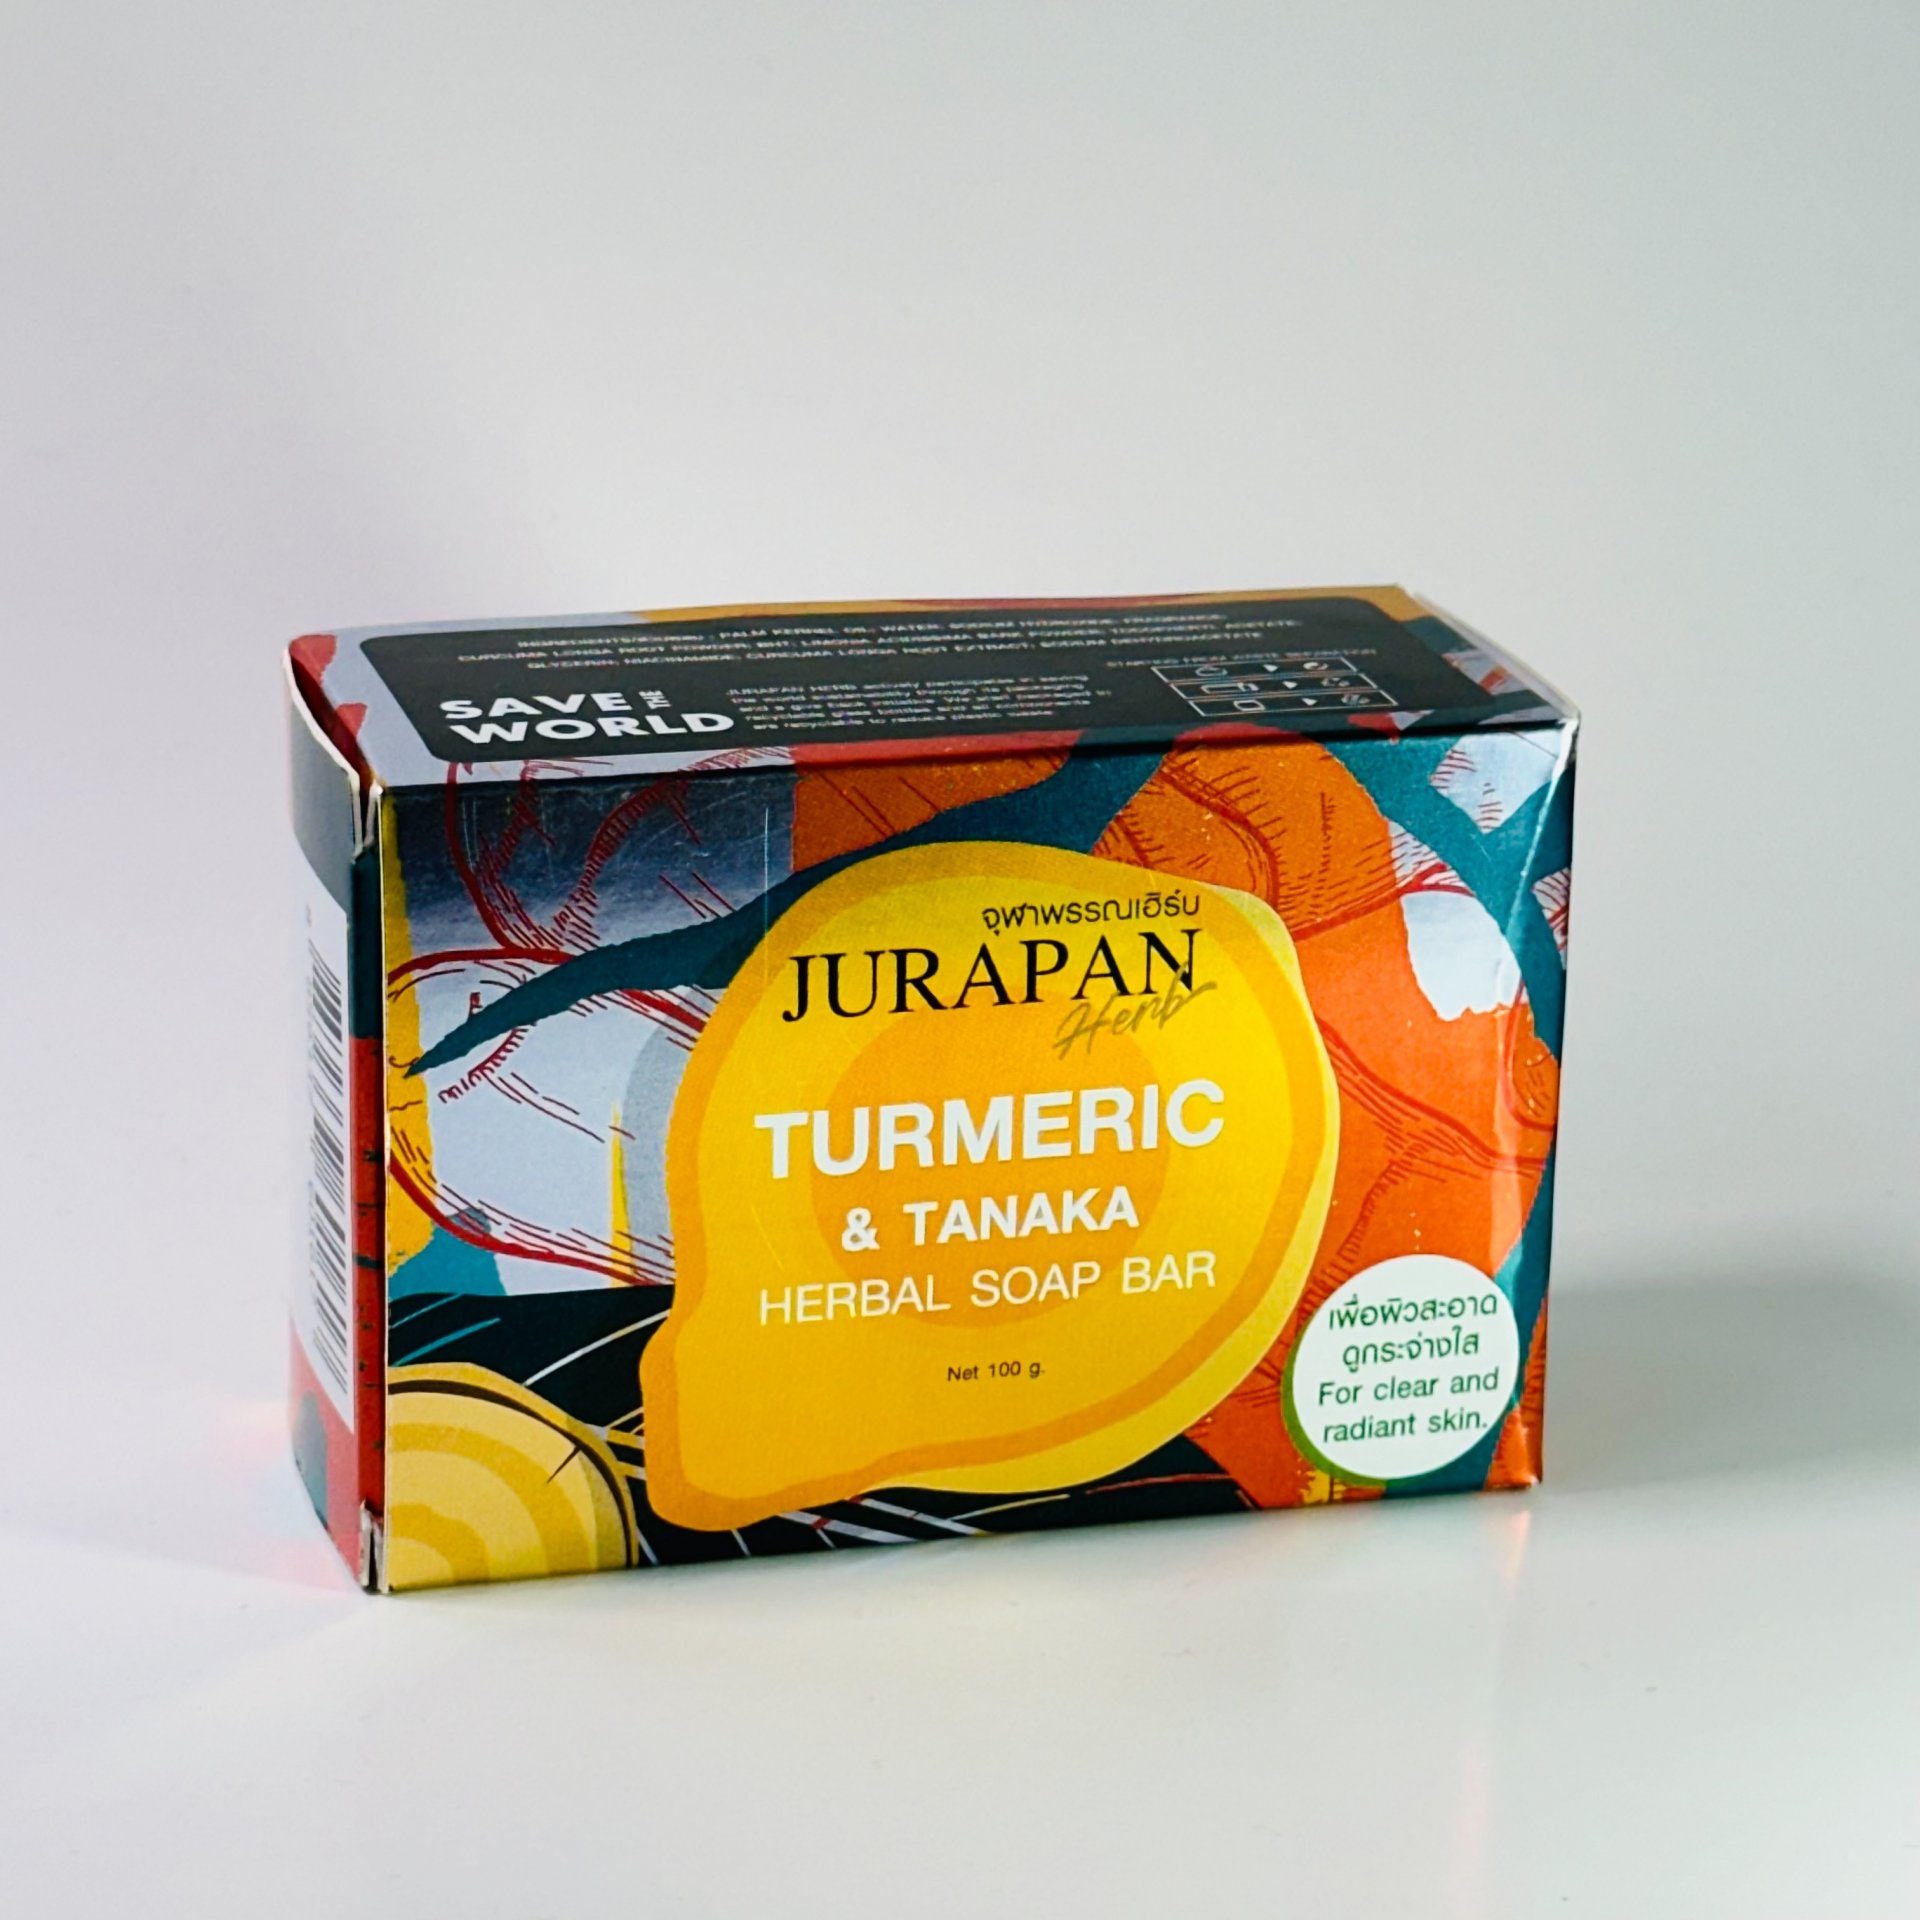 Turmeric & Tanaka Herbal Soap Bar